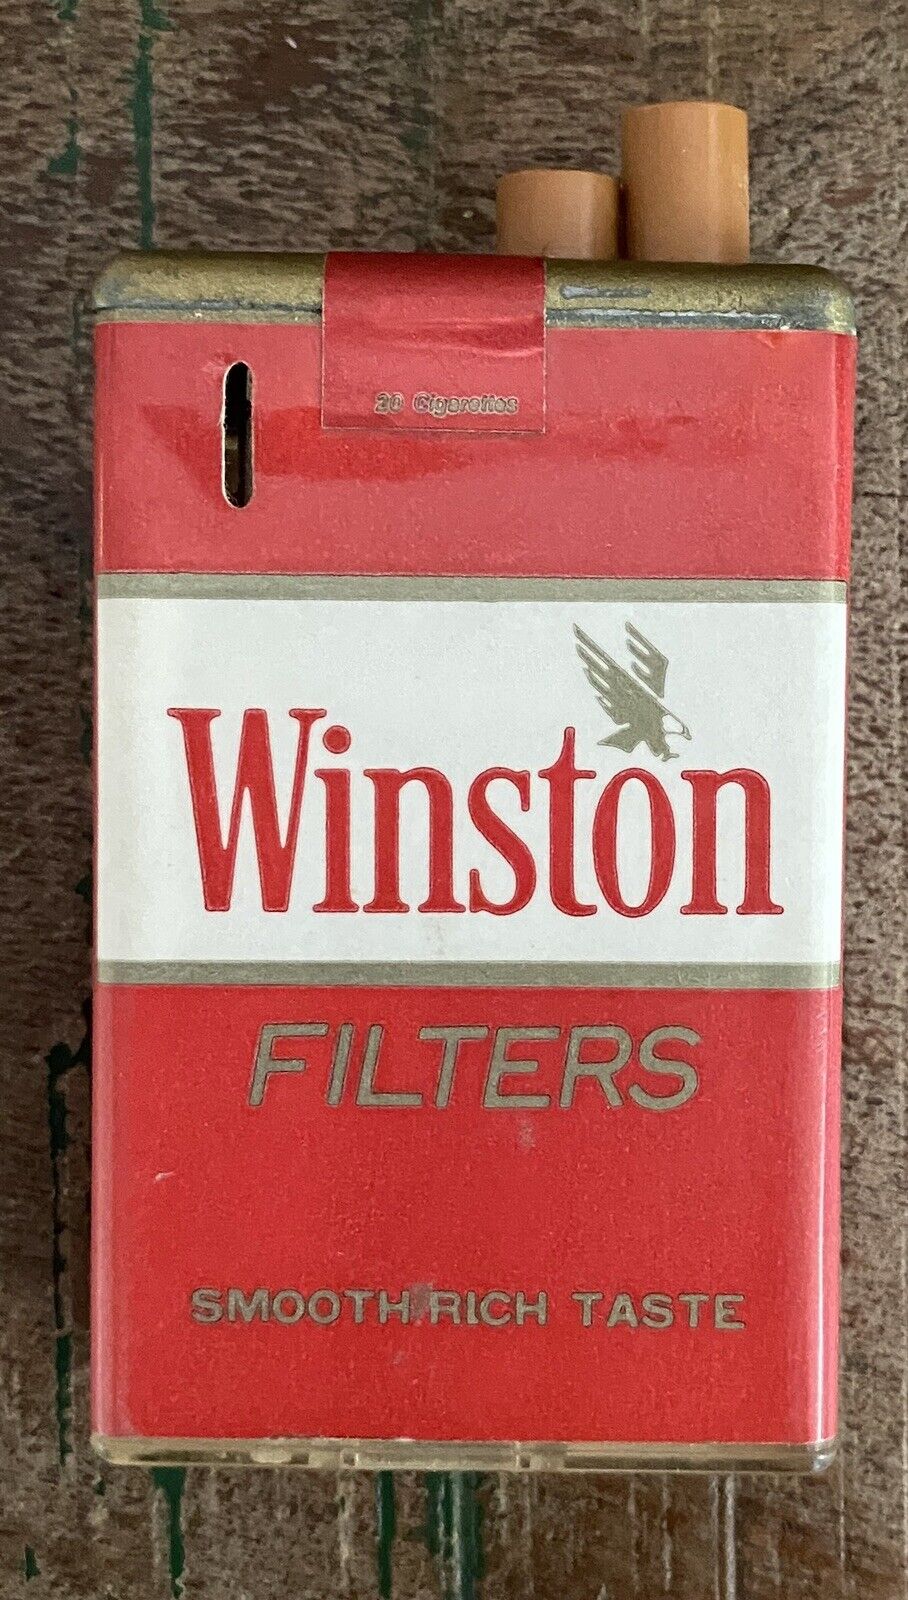 Winston FILTERS SMOOTH RICH TASTE Advertising Cigarette Lighter WORKS Vintage